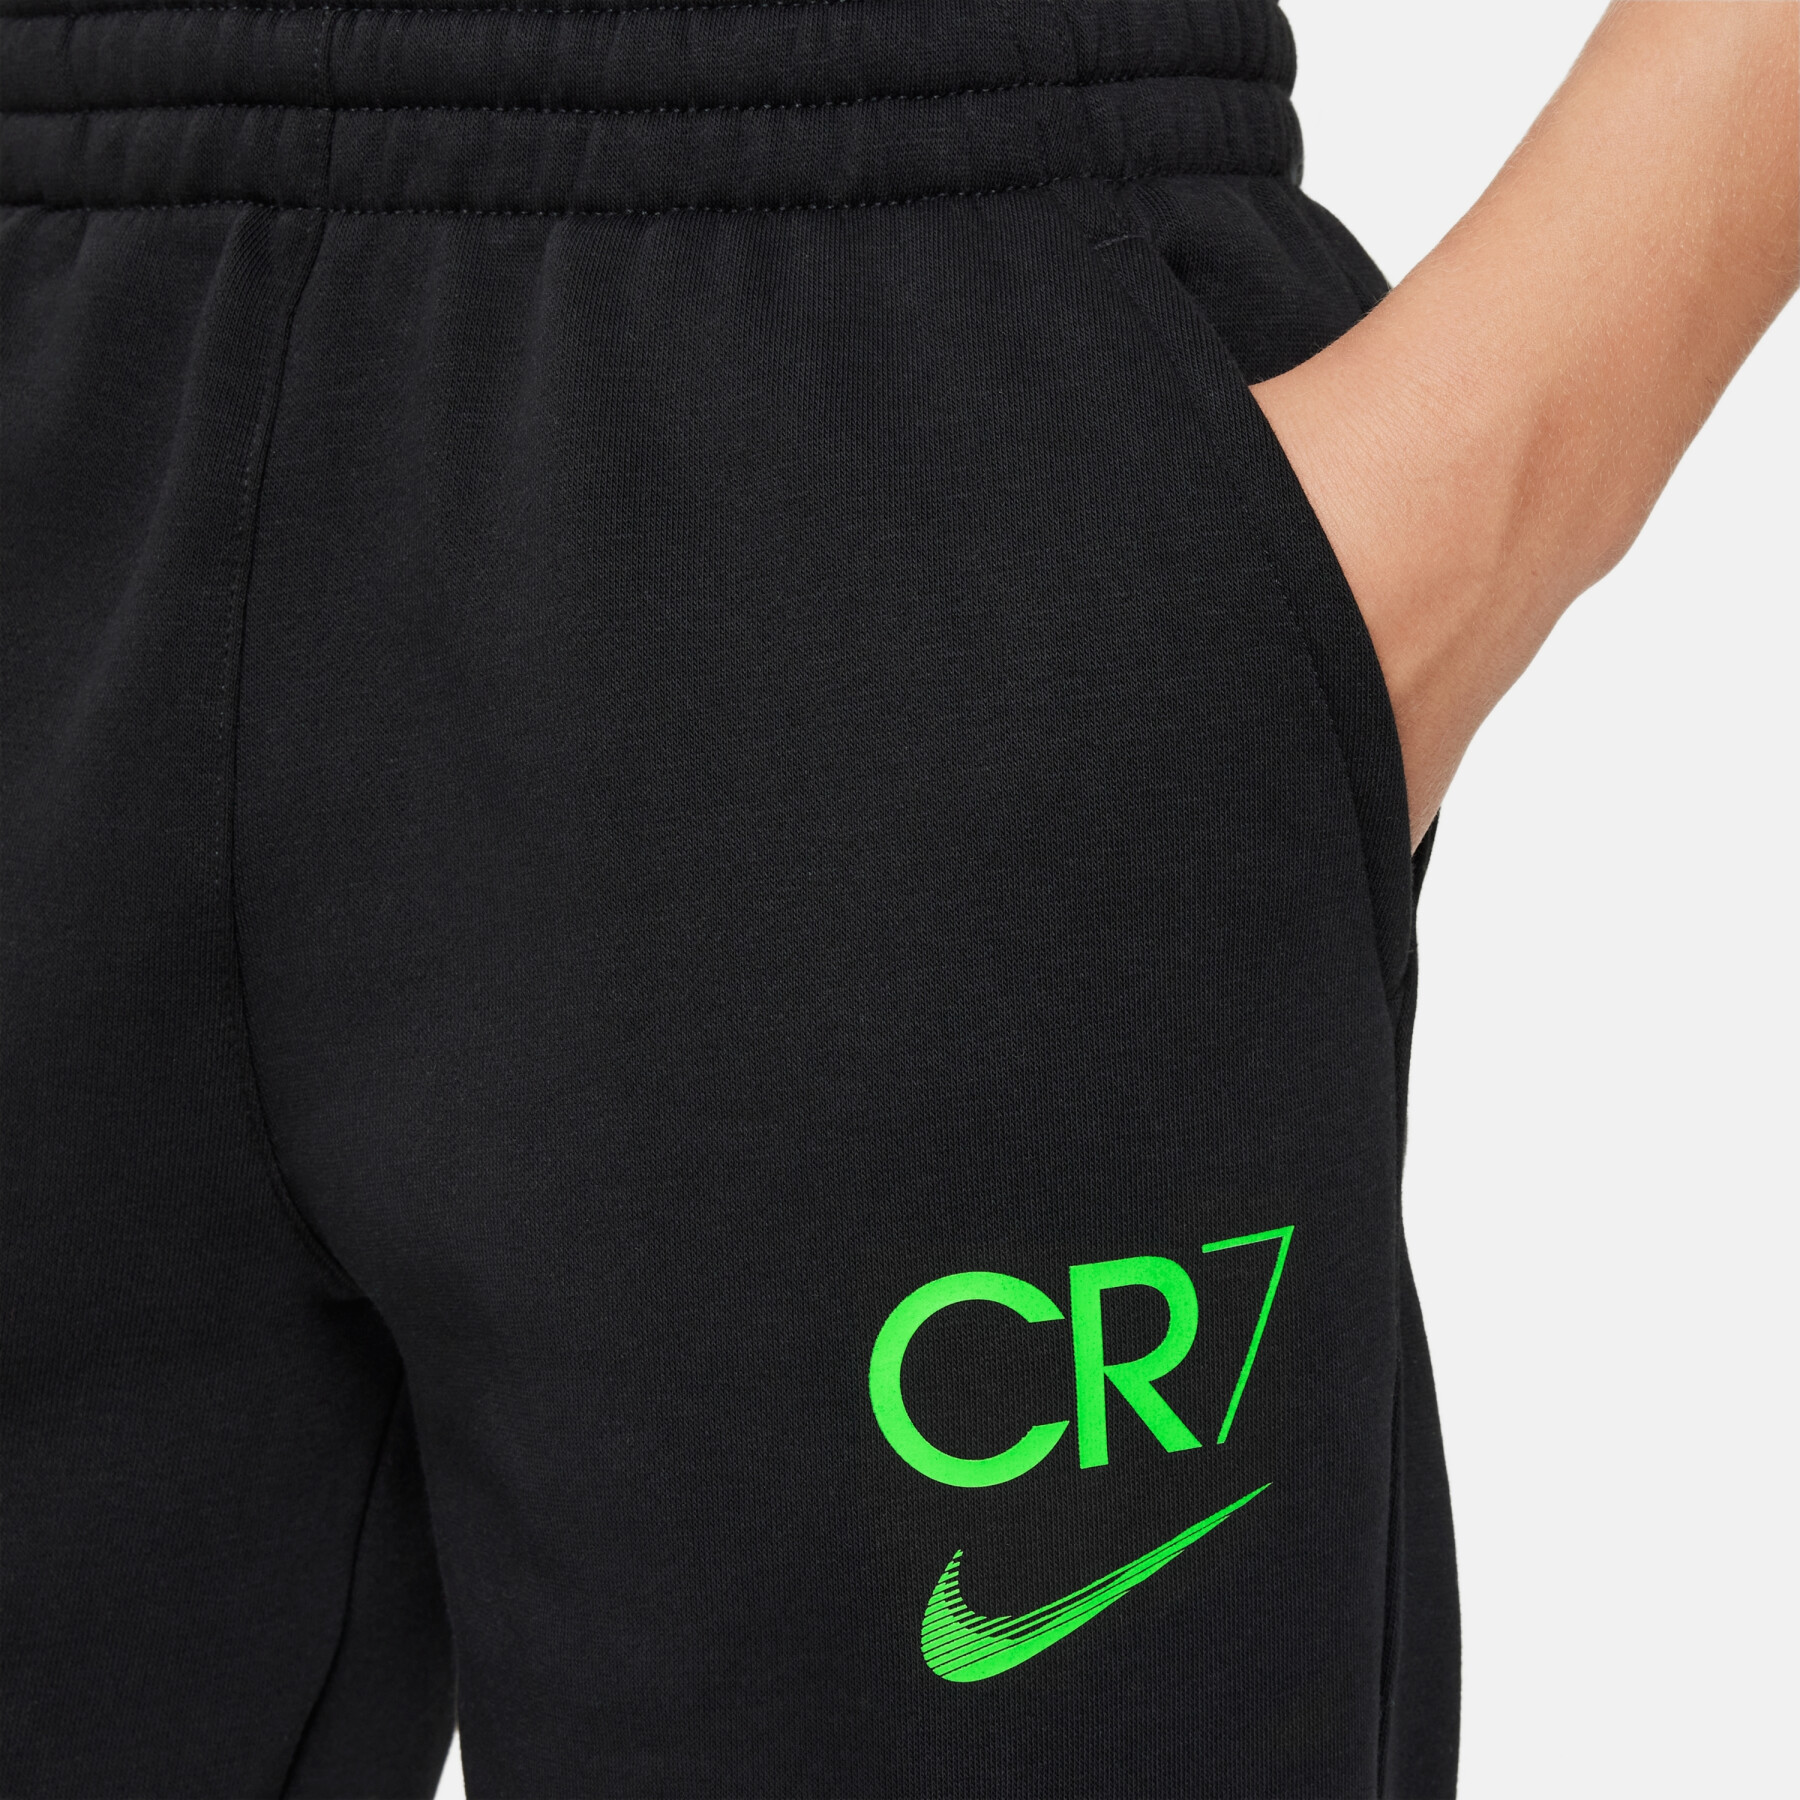 Pantalon de survêtement enfant Nike Academy Player Edition:CR7